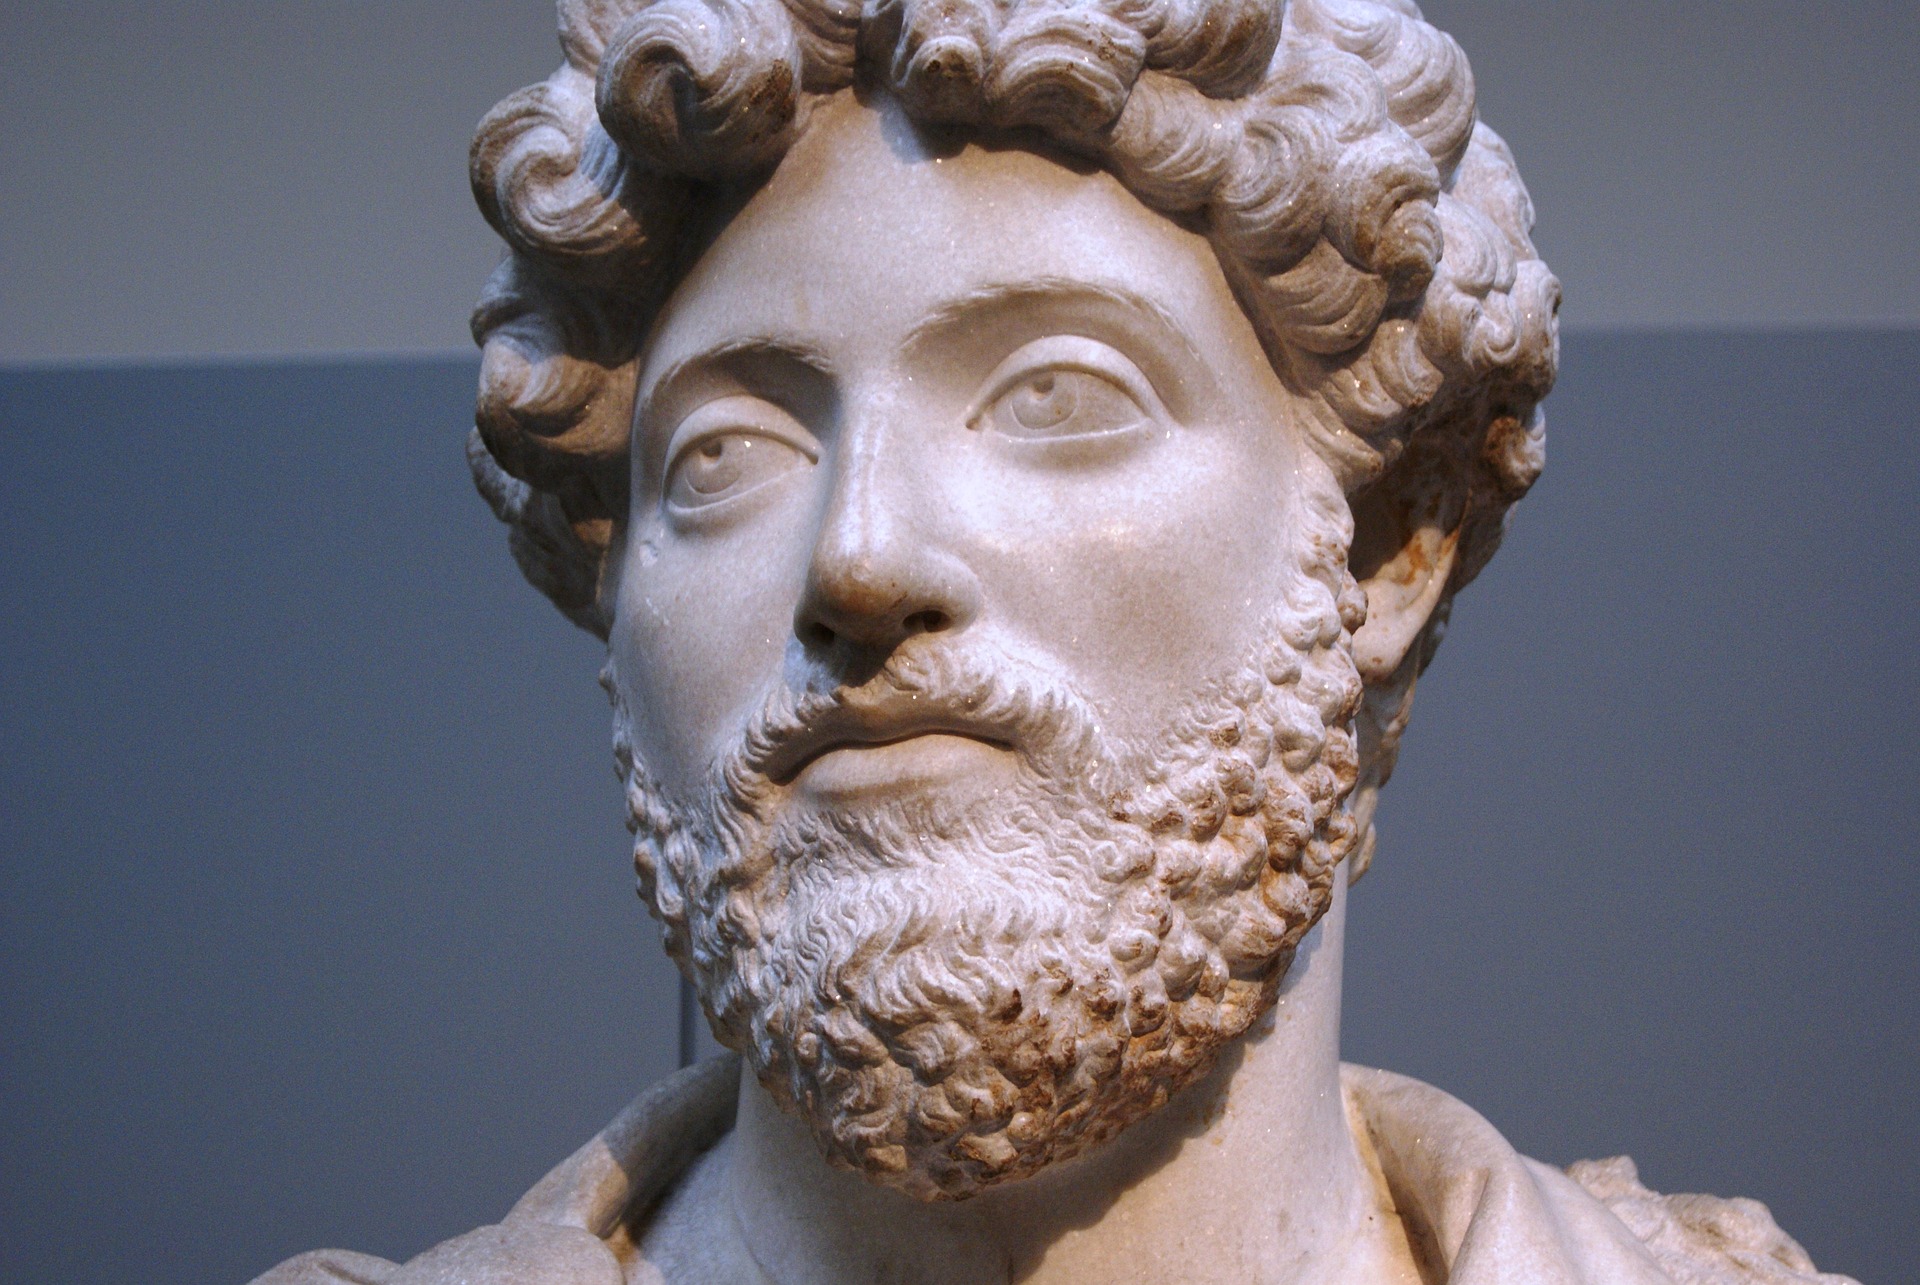 A statue of the Roman Emperor Marcus Aurelius